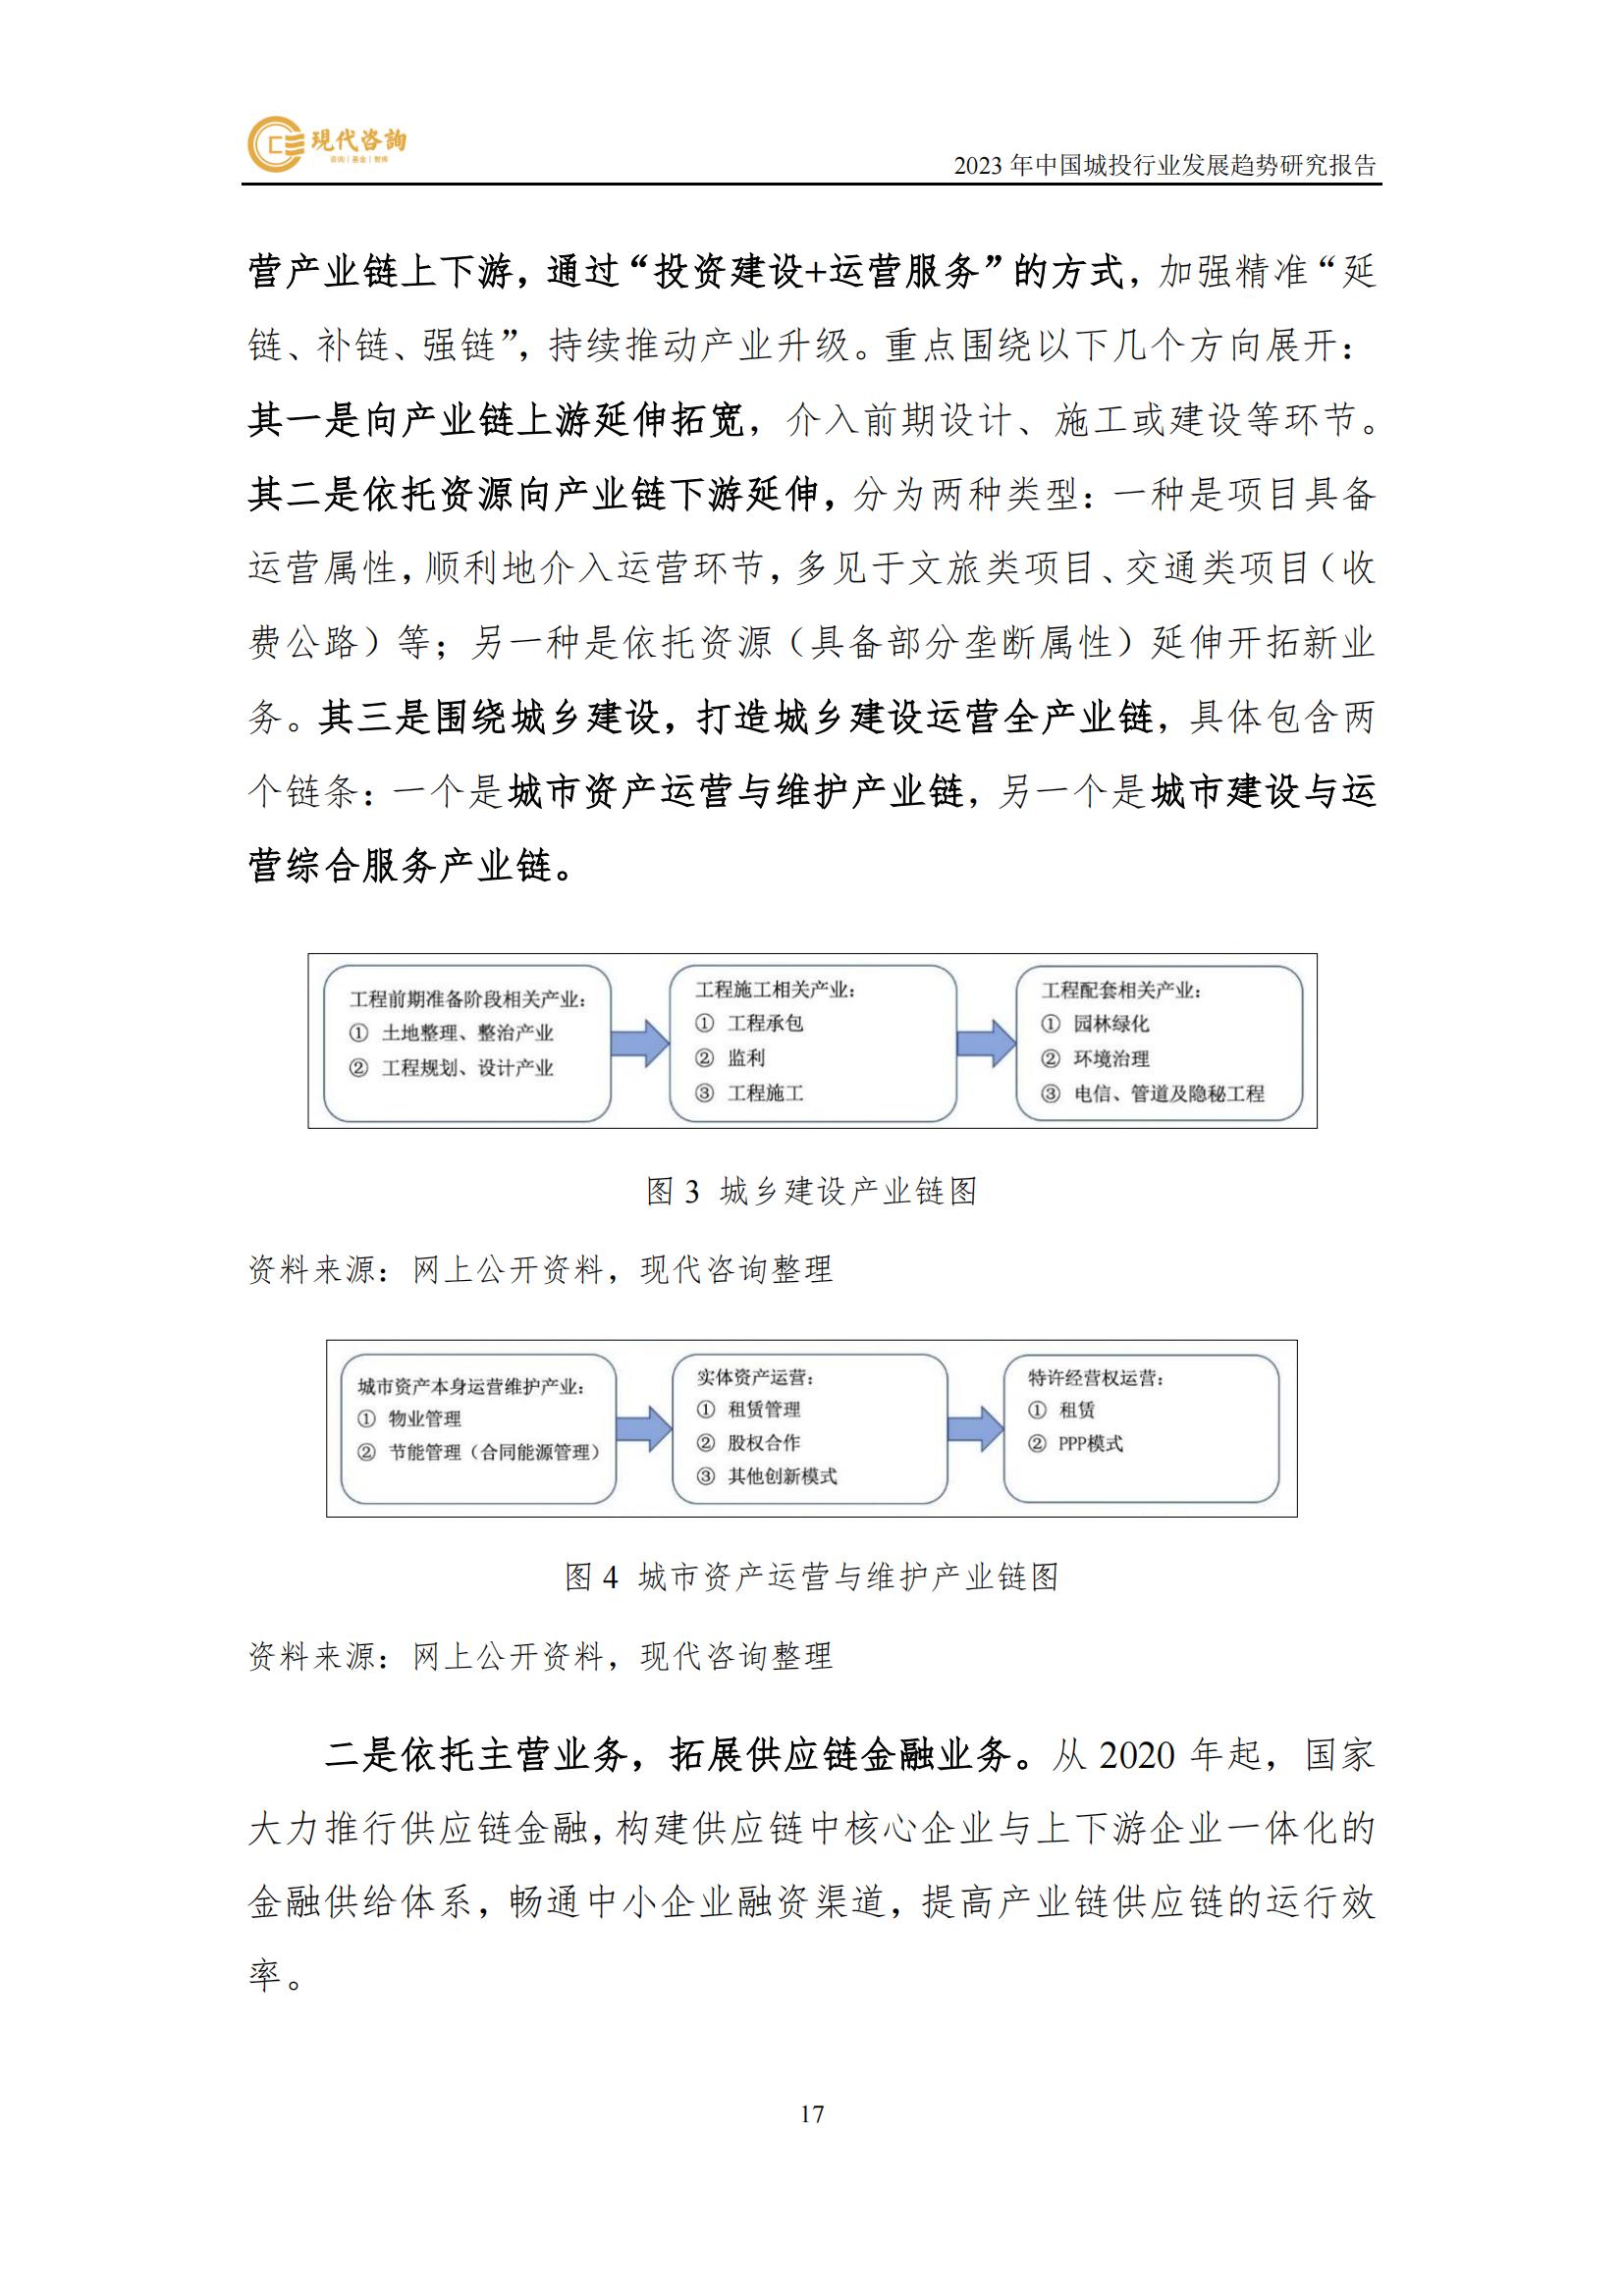 中國城投行業發展趨勢研究報告（2023）(2)_23.jpg